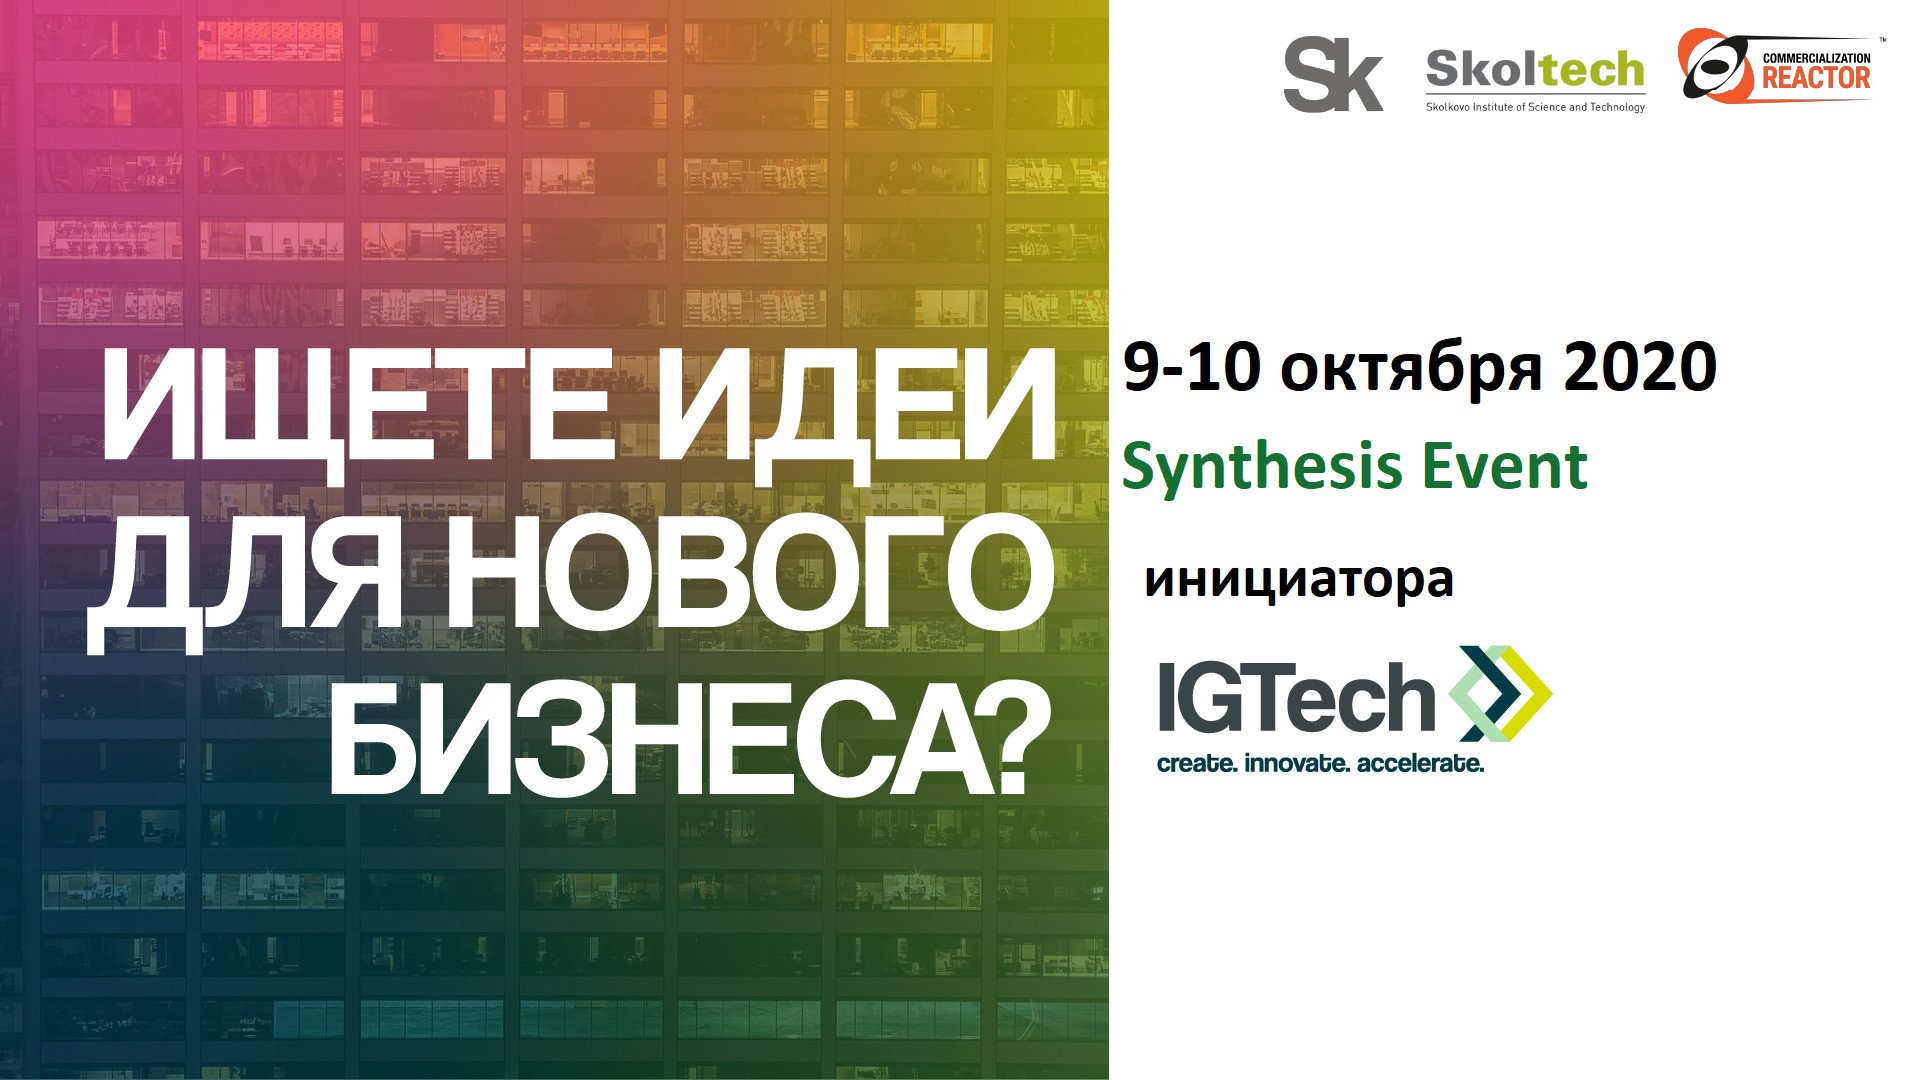 igtech_ign-ev-_logo